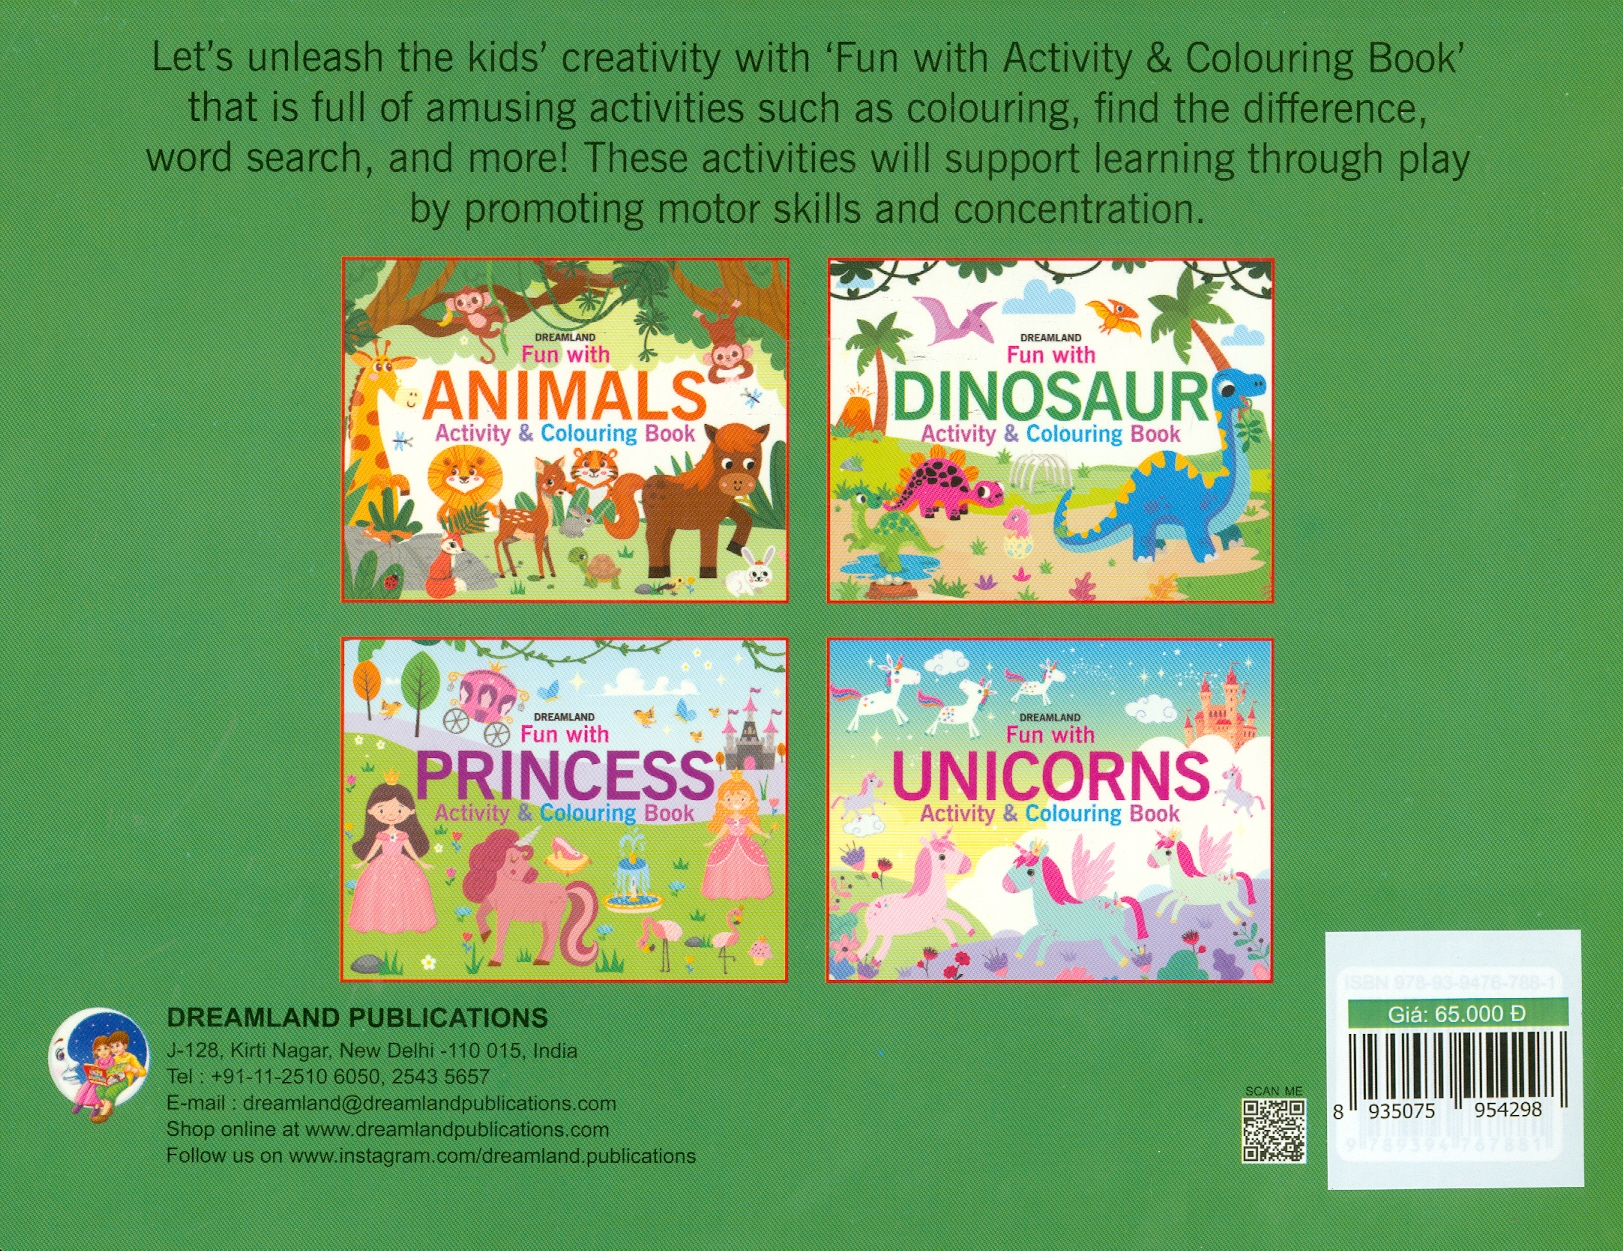 Fun With Animal Activity & Colouring Book (Sách Tô Màu Cho Trẻ Em - Vui Cùng Động Vật)